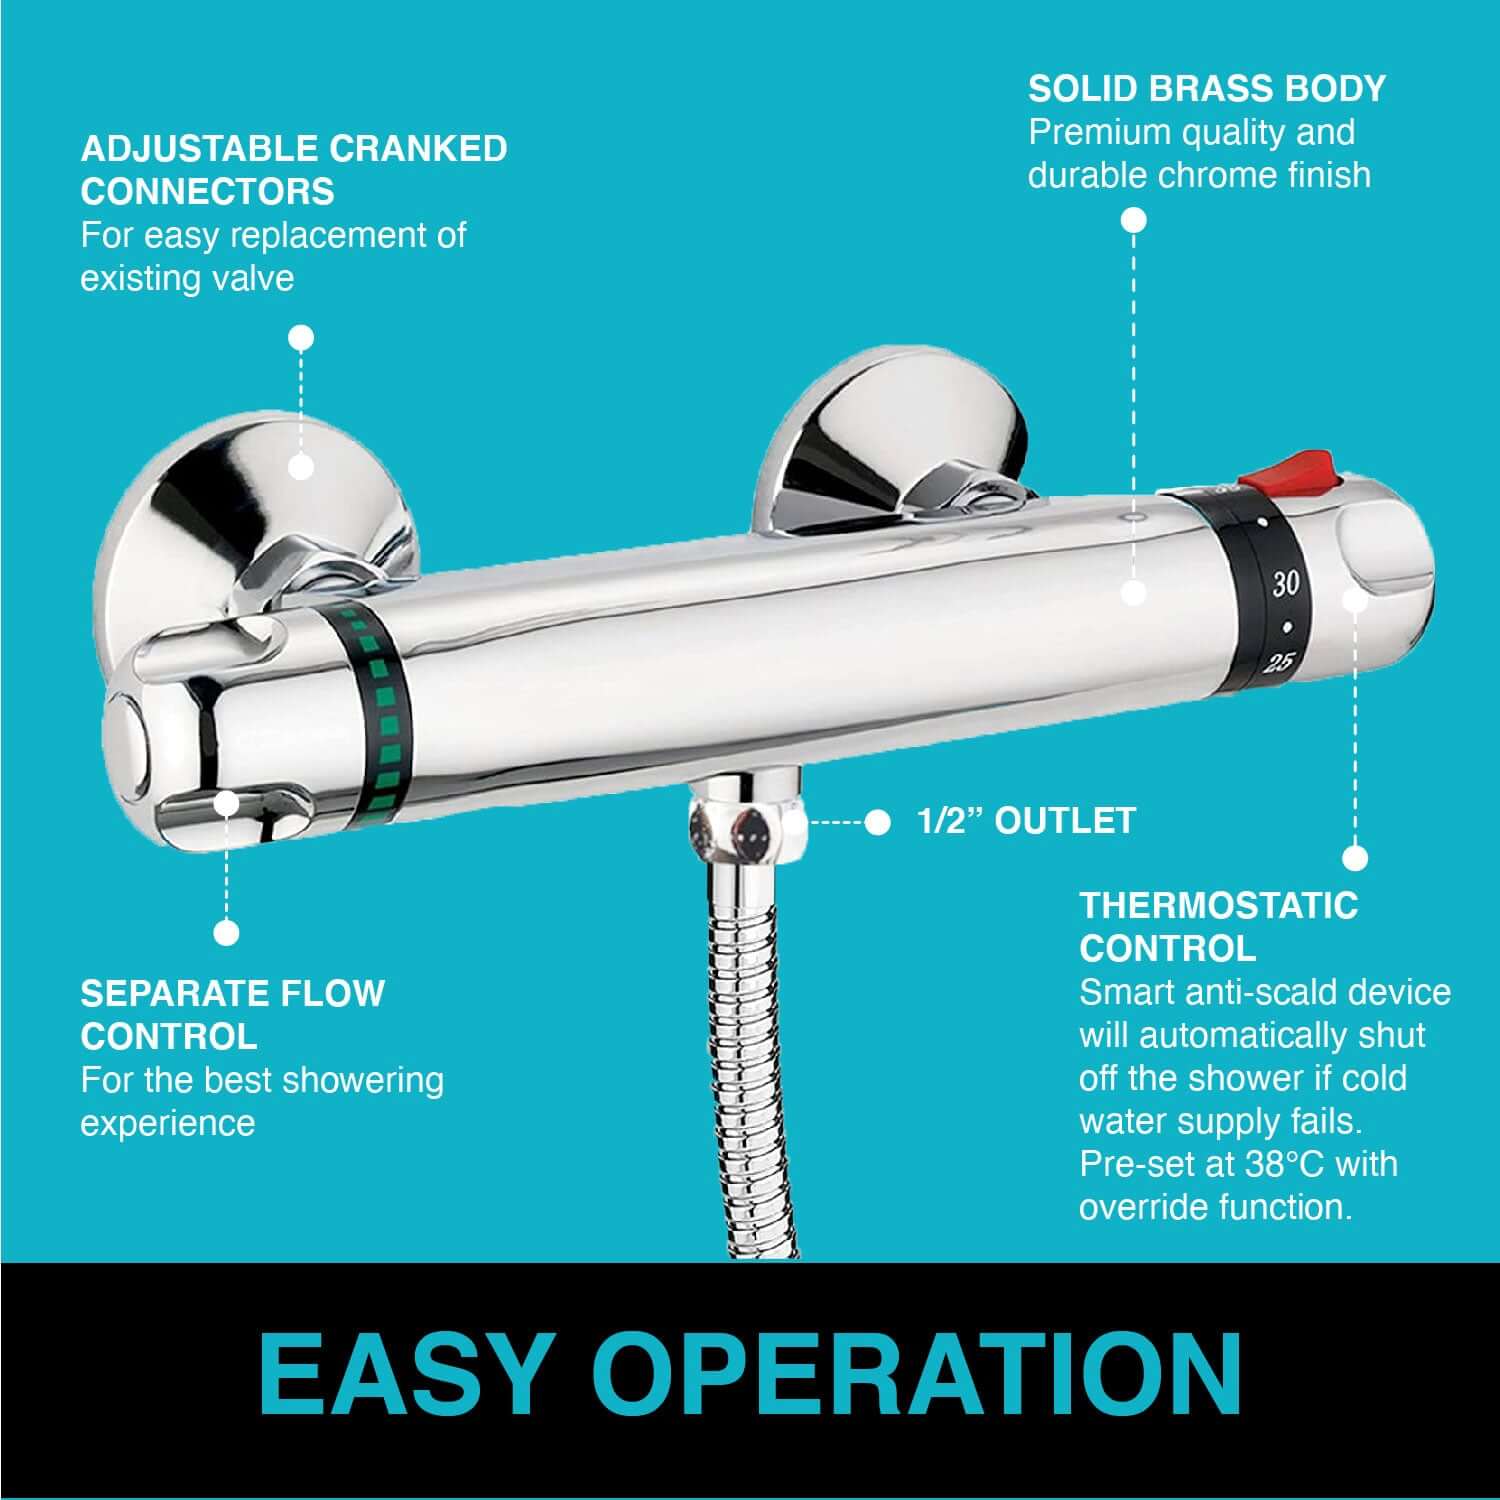 Luna standard thermostatic bar shower valve bottom outlet - chrome - Showers